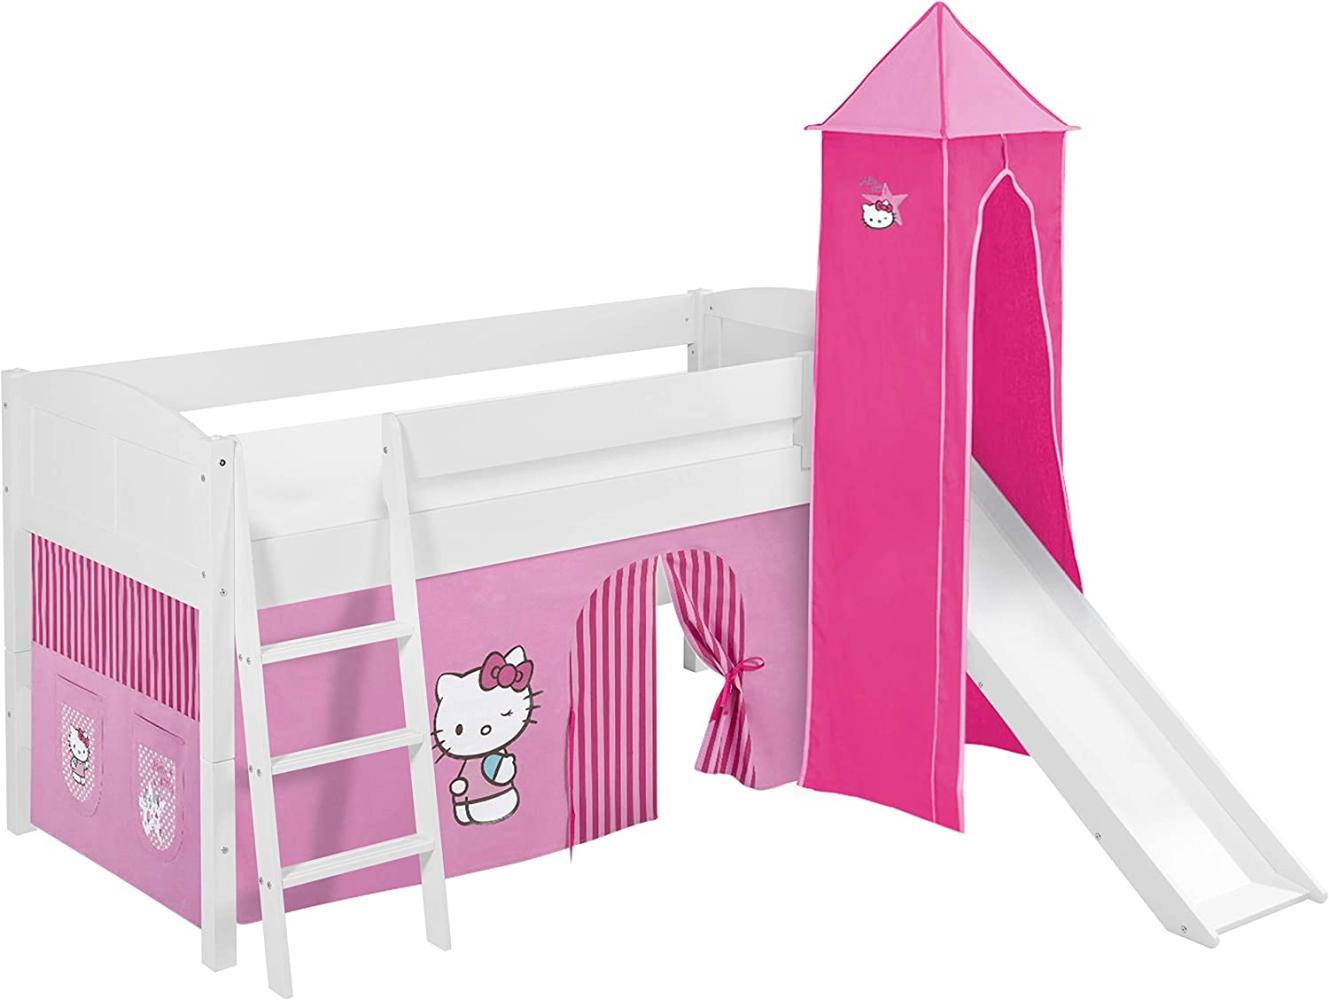 Lilokids 'Ida 4106' Spielbett 90 x 200 cm, Hello Kitty Rosa, Kiefer massiv, mit Turm, Rutsche und Vorhang Bild 1